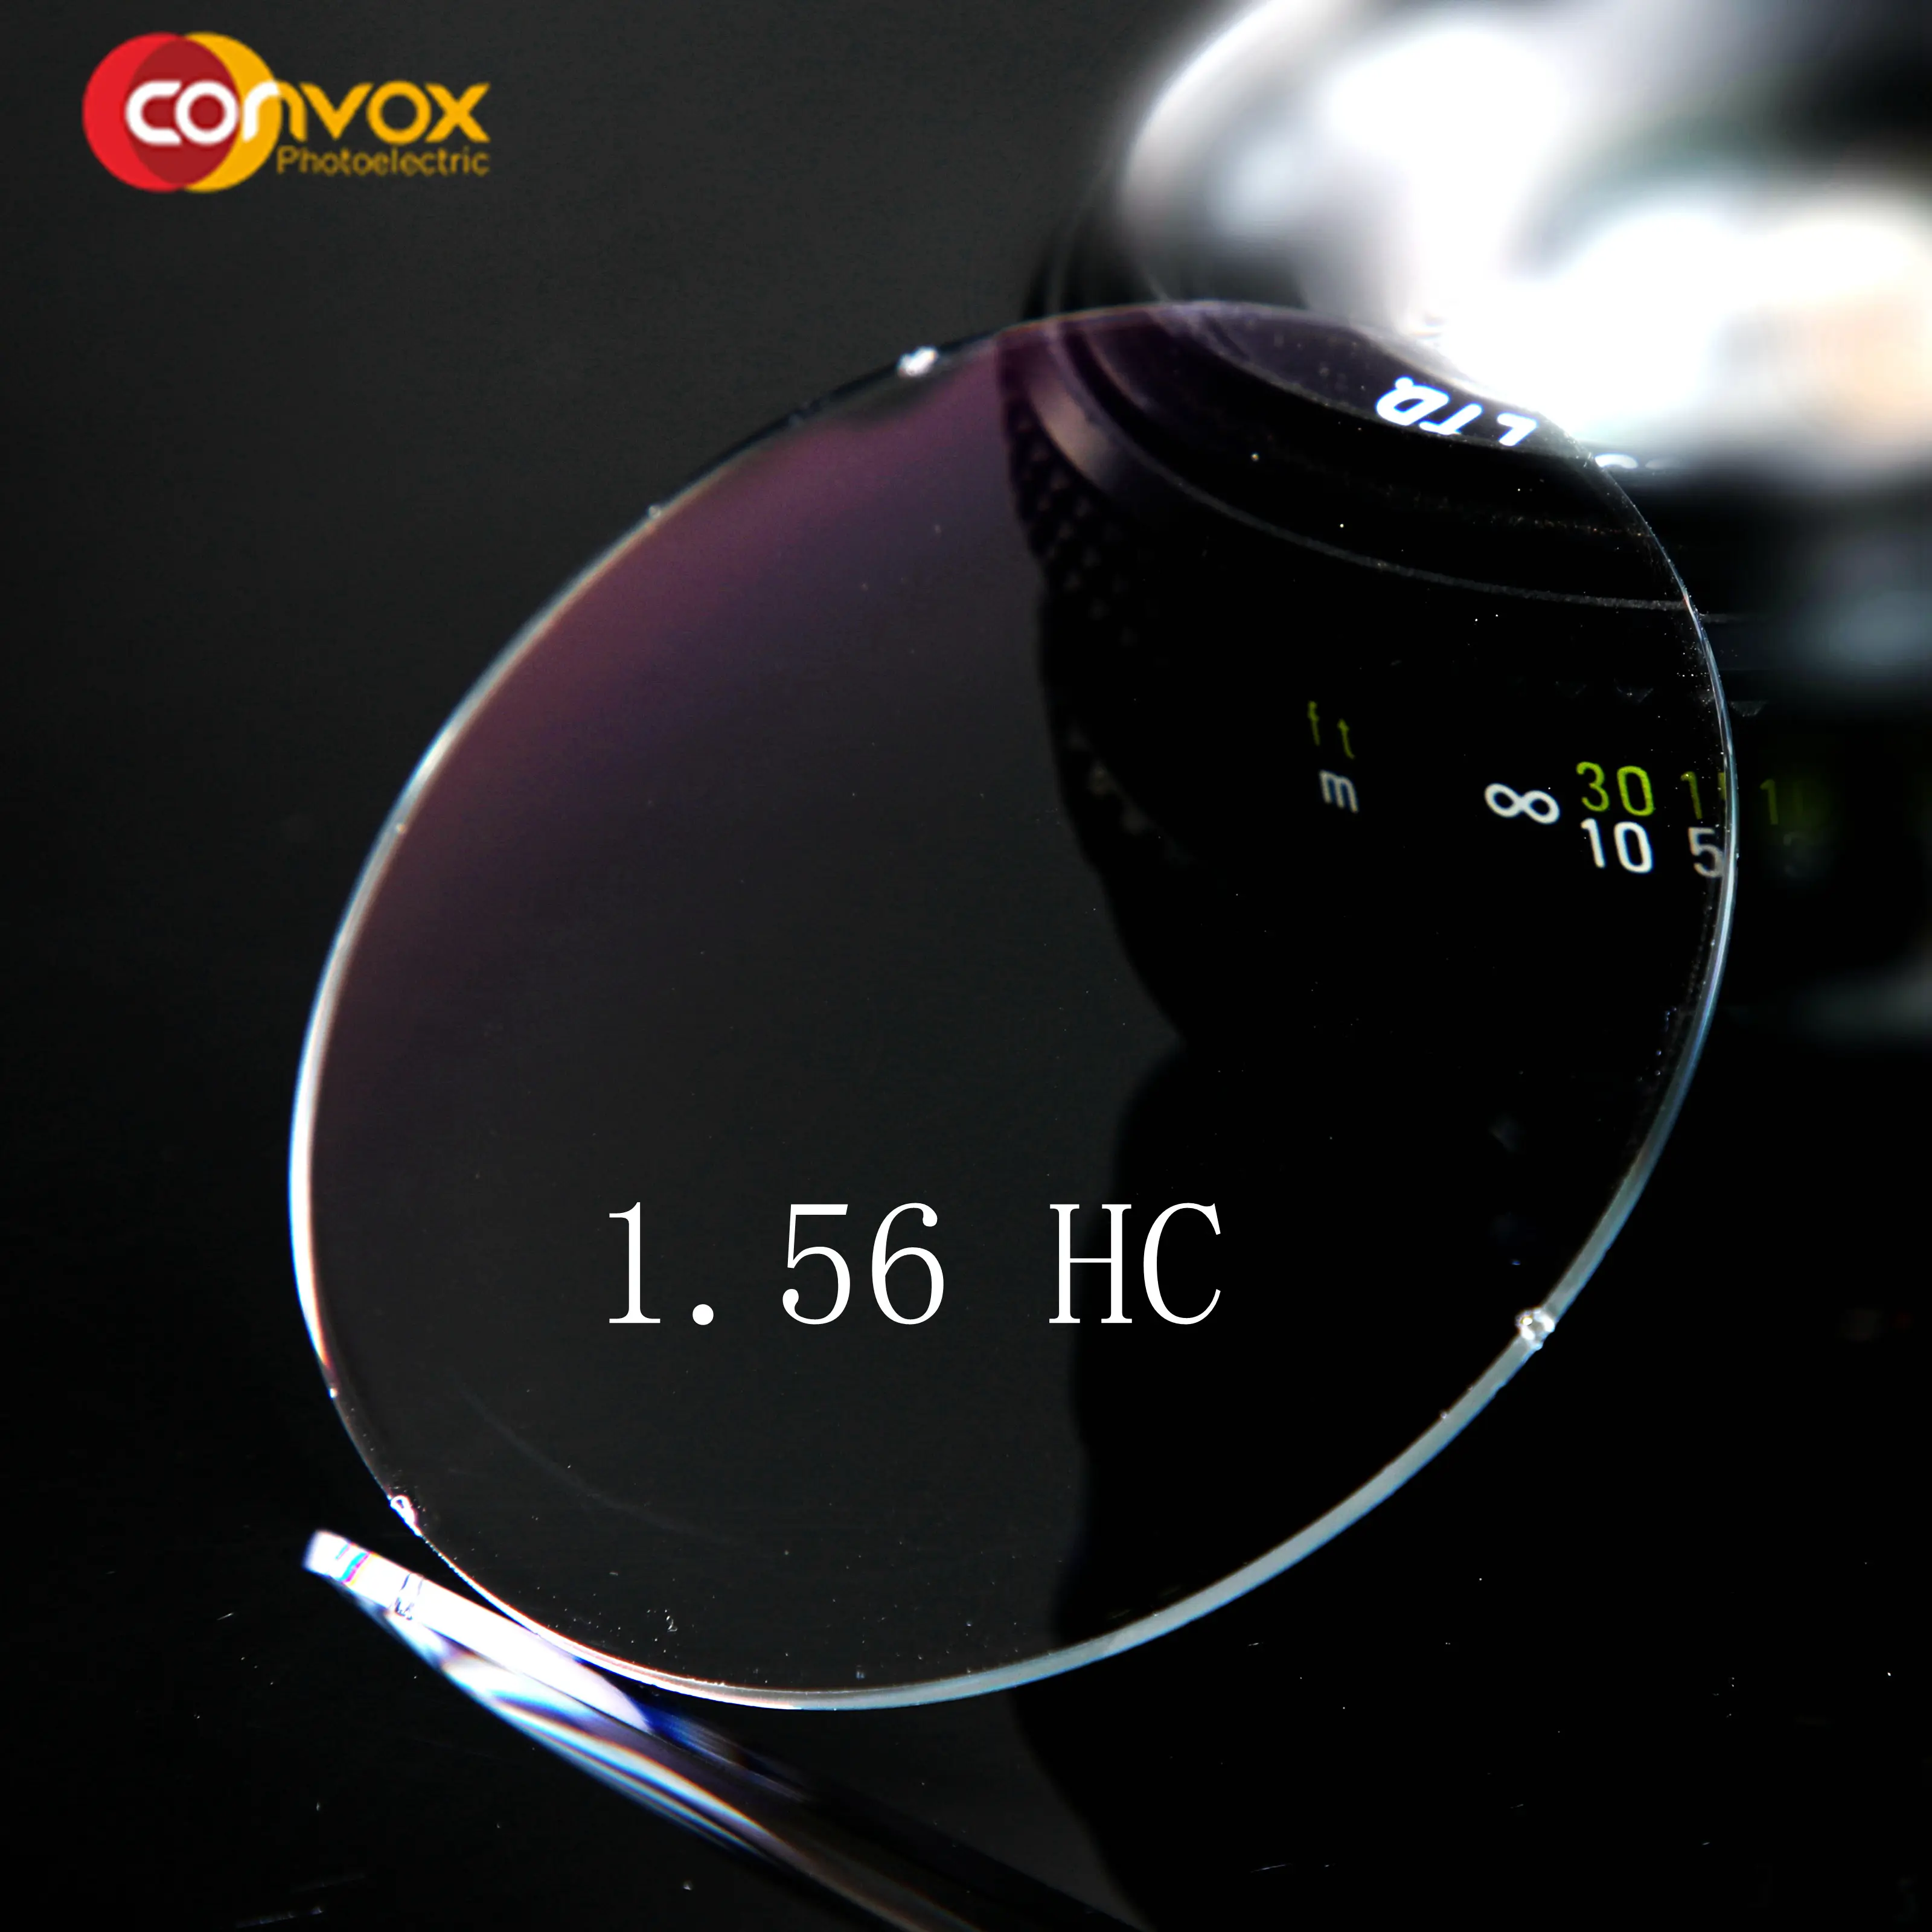 Convox 클래식 cr 하드 코트 1.56 hc 광학 렌즈